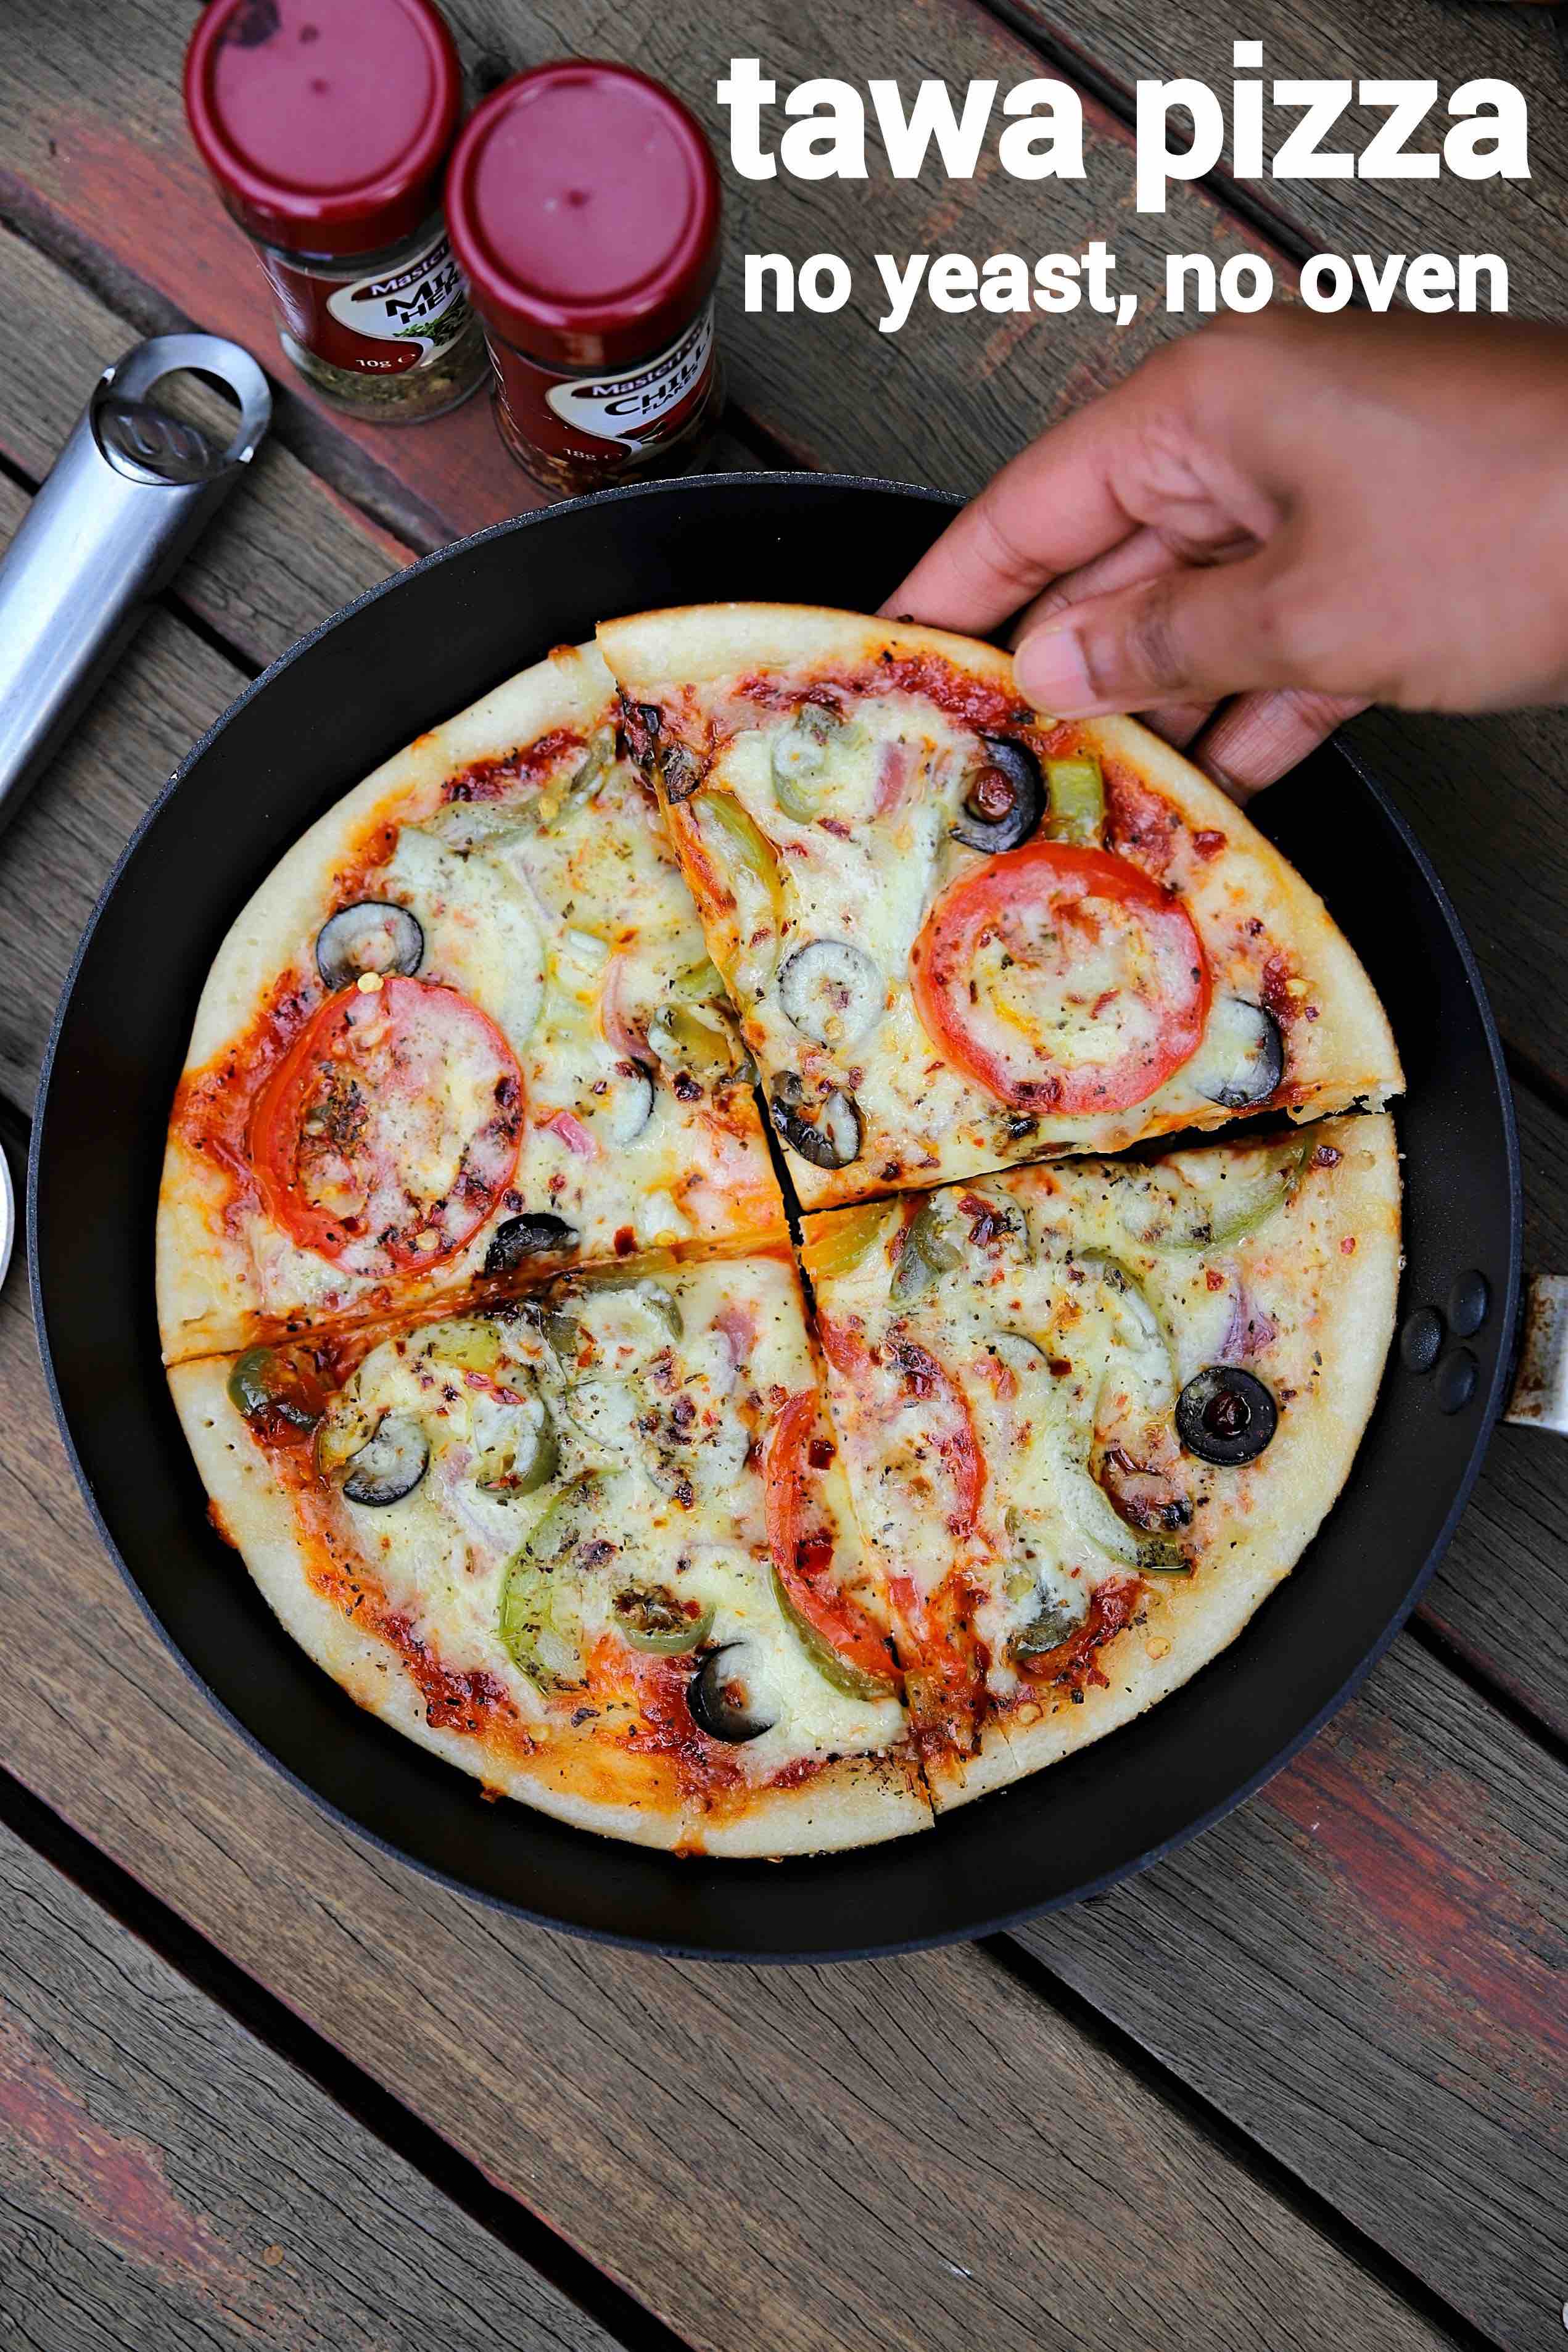 tawa pizza recipe  veg pizza on tawa without yeast  pizza without oven